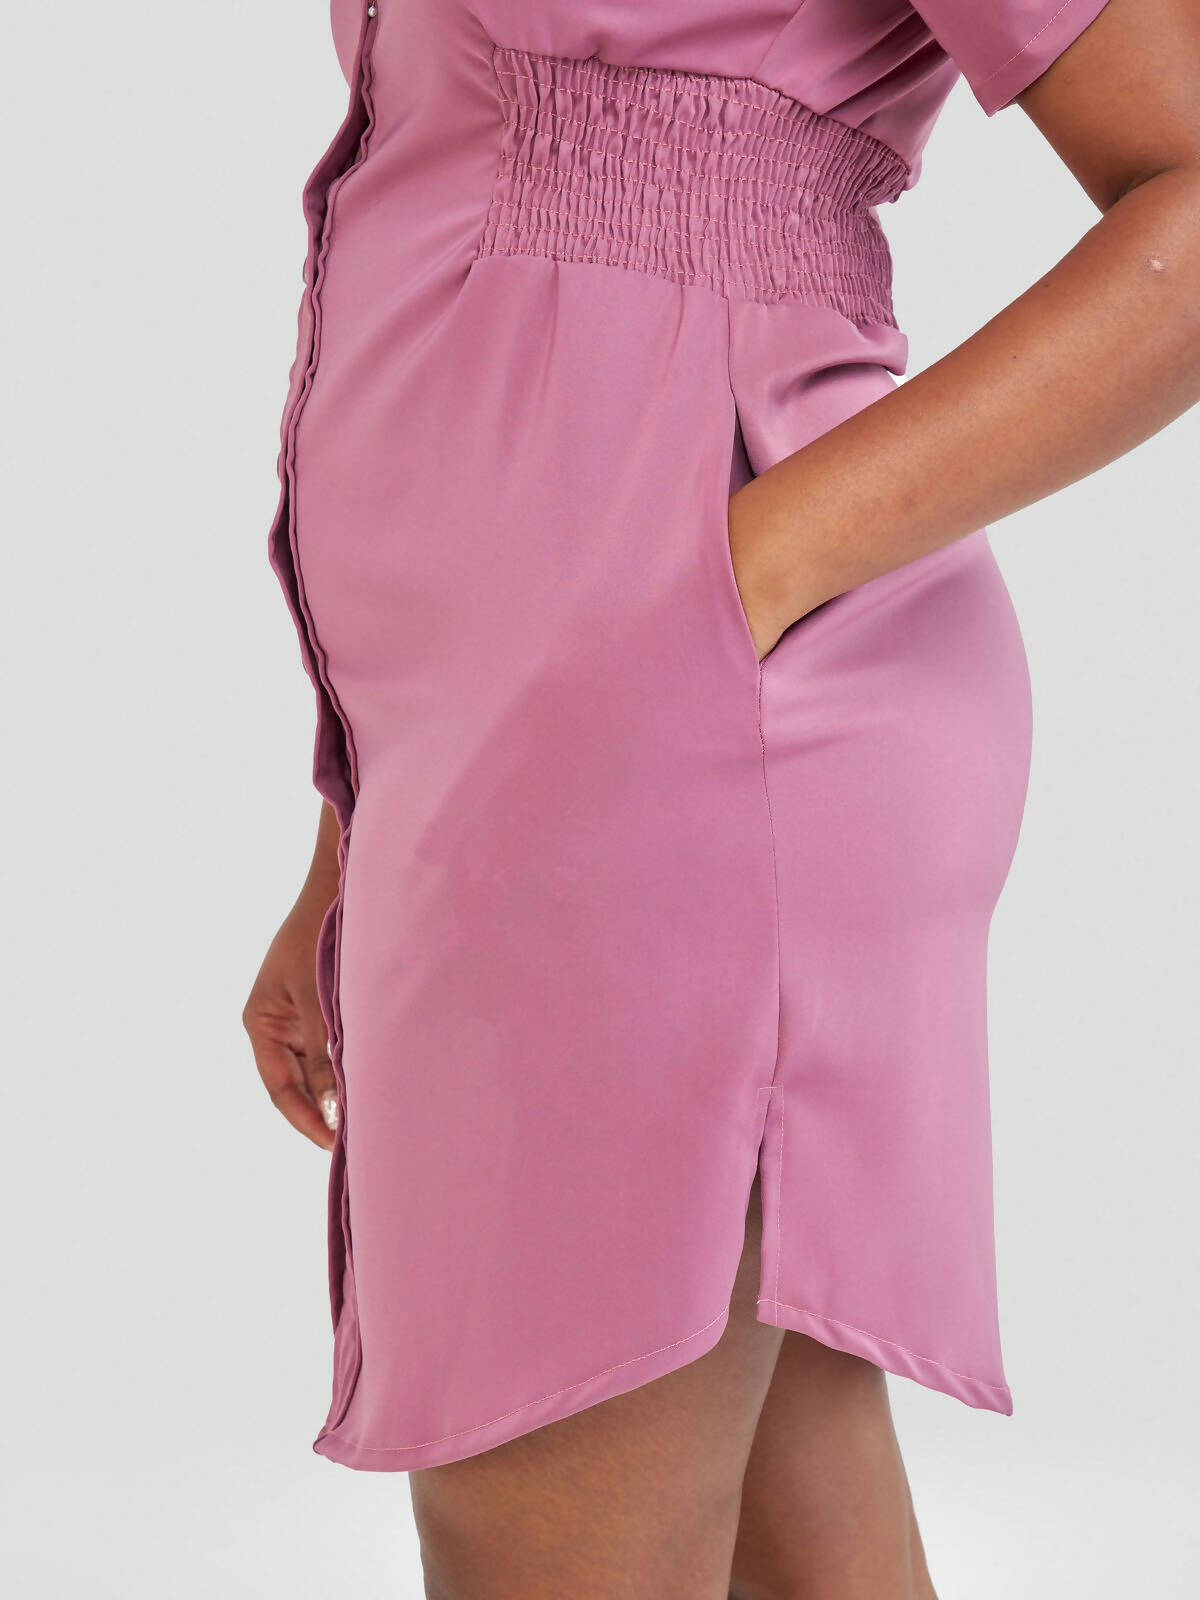 Jem Africa Mwikali Shirt Dress - Lilac - Shopzetu